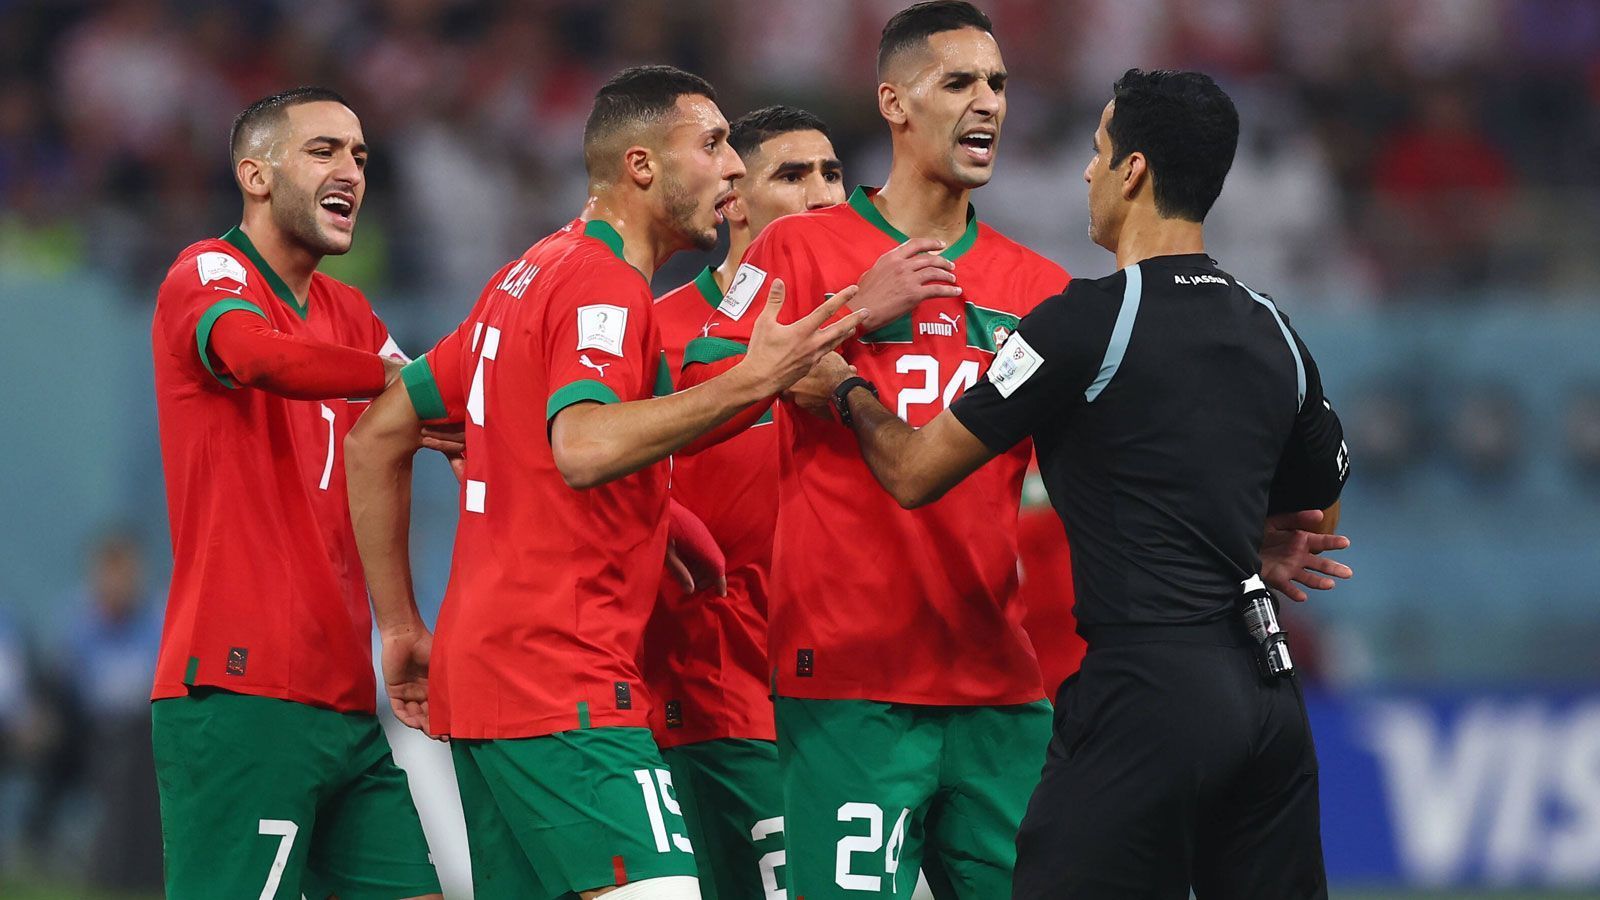 
                <strong>Marokko will was klären</strong><br>
                In den Fokus gerät auch der katarische Schiedsrichter Abdulrahman Al Jassim, der hier von den marokkanischen Profis sicher nicht nach seiner weiteren Abendplanung befragt wird.
              